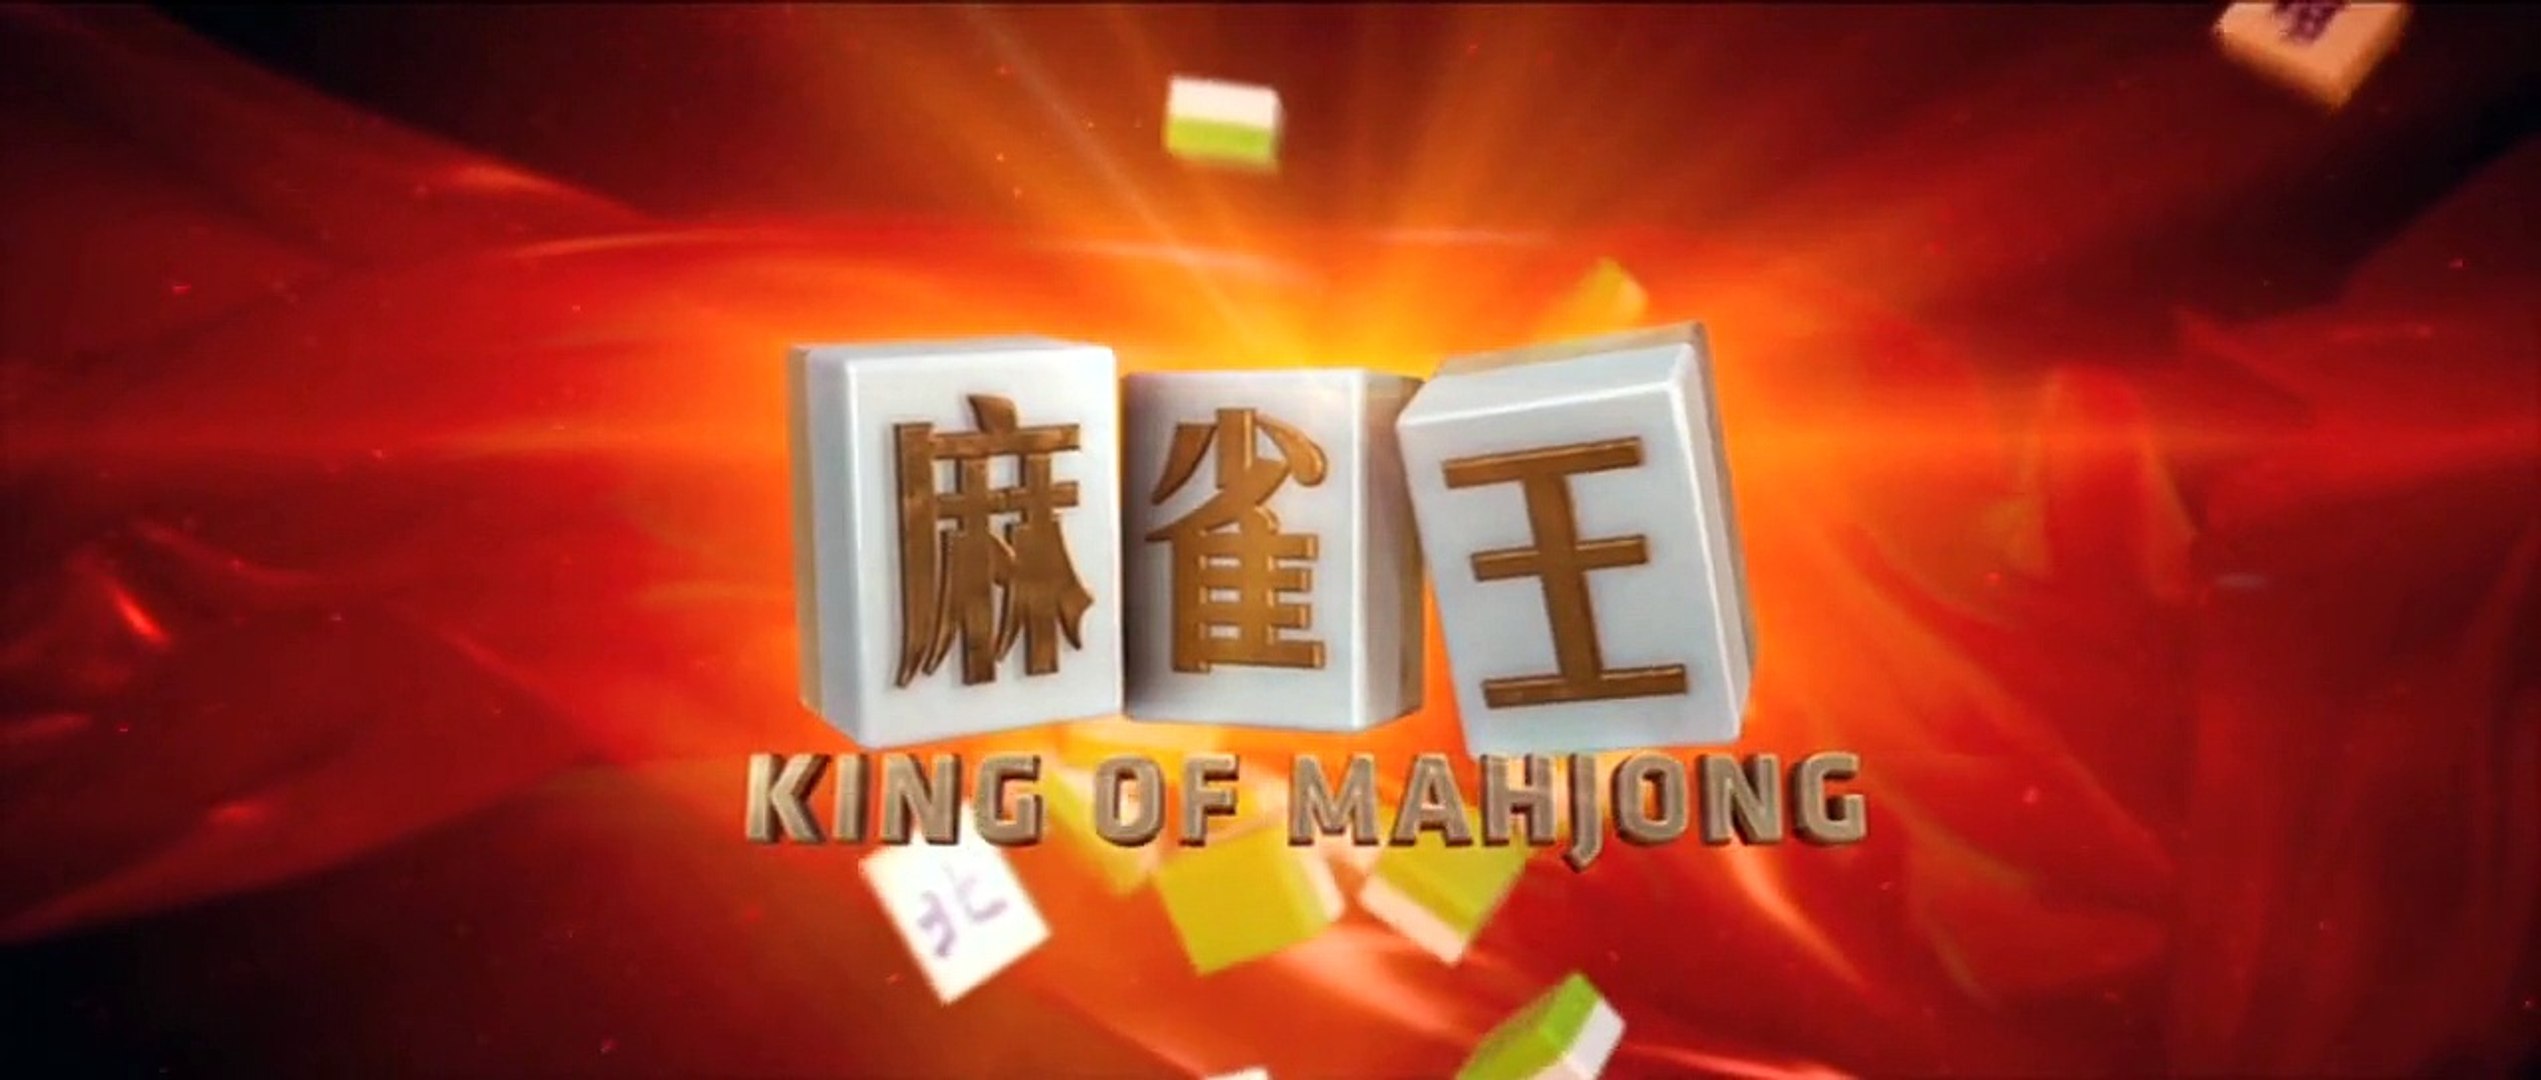 麻雀王 上集 粤语 King Of Mahjong 1 2 Video Dailymotion